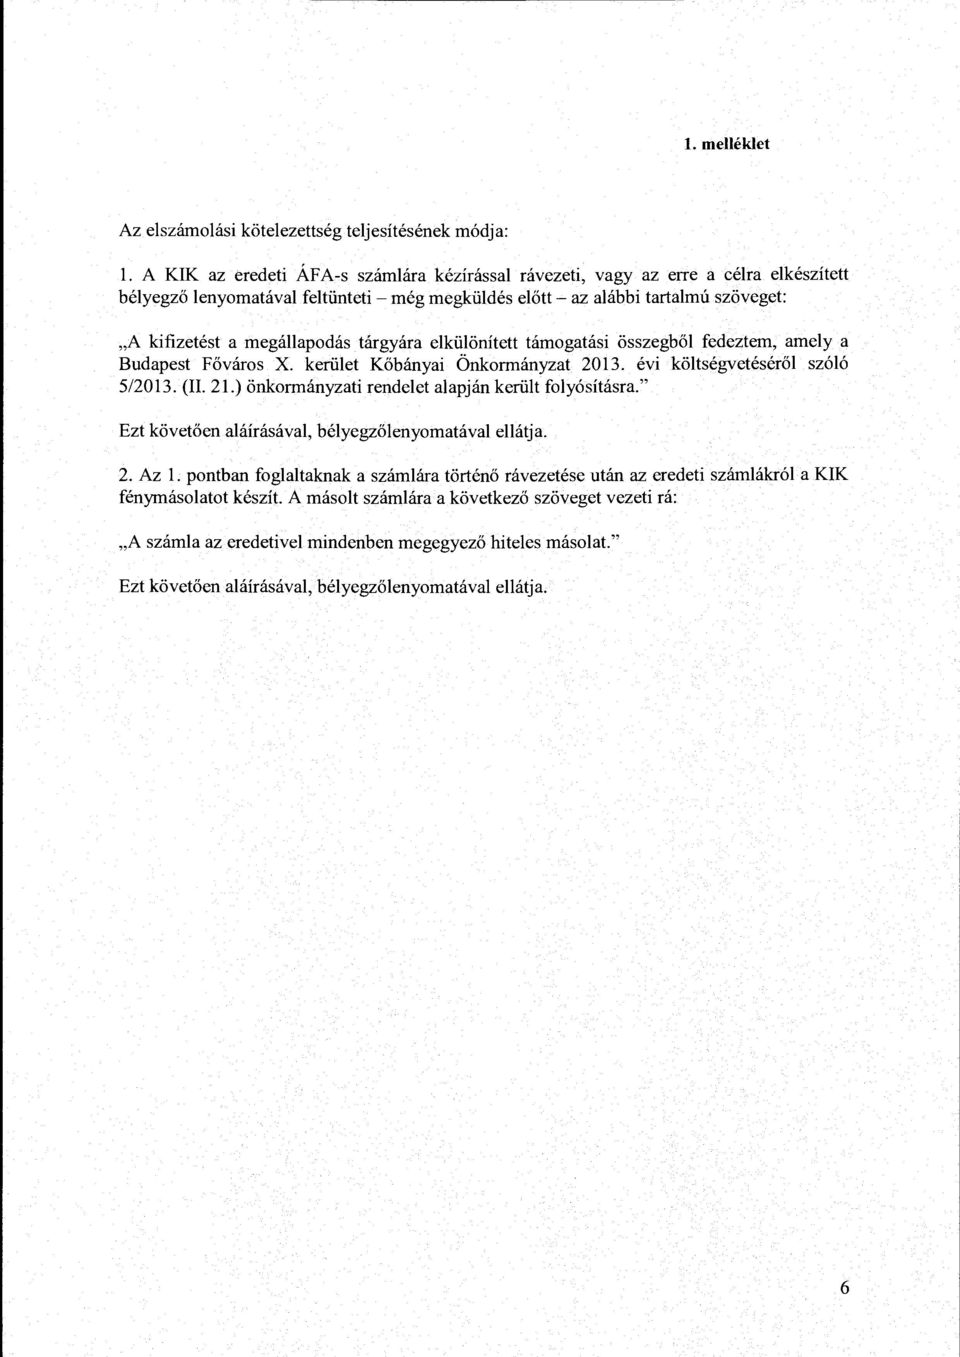 megállapodás tárgyára elkülönített támogatási összegből fedeztem, amely a Budapest Főváros X. kerület Kőbányai Önkormányzat 2013. évi költségvetéséről szóló 5/2013. (Il. 21.